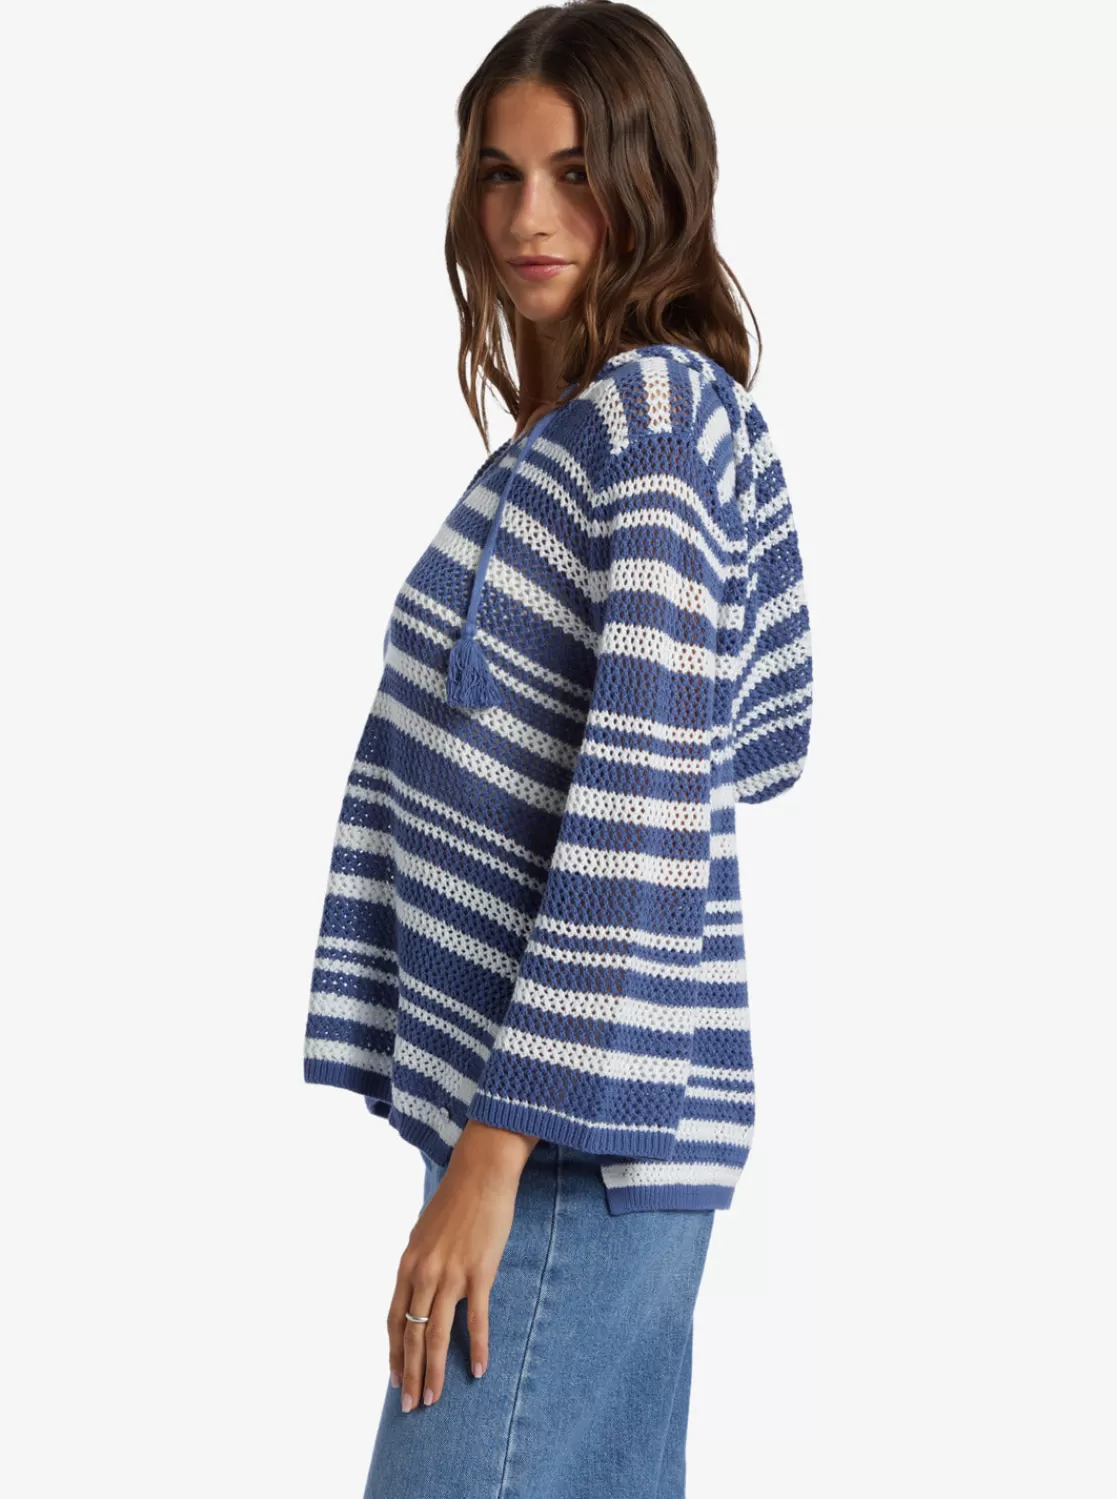 After Beach Break Stripe V-Neck Sweater-ROXY Best Sale